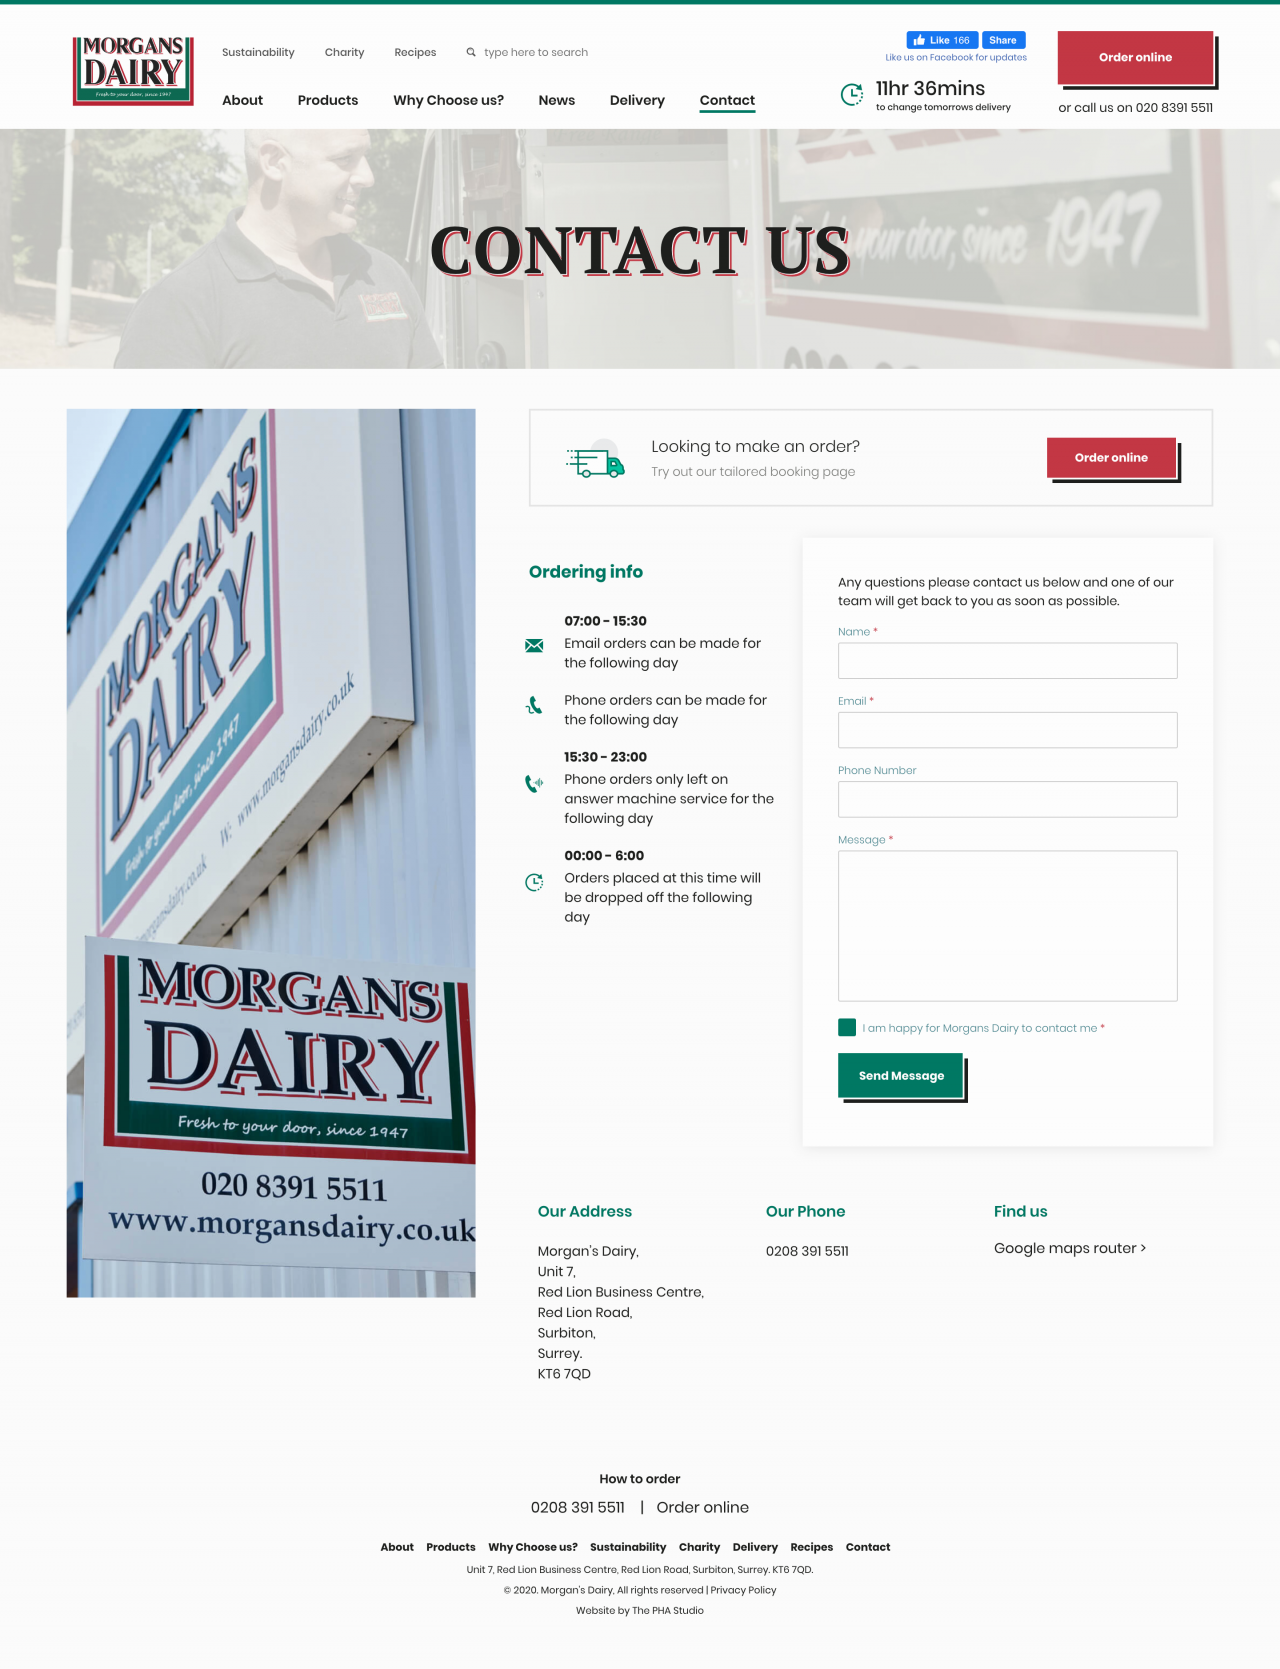 Morgans Dairy Website | Tom Hoadley | Freelance Wordpress Developer